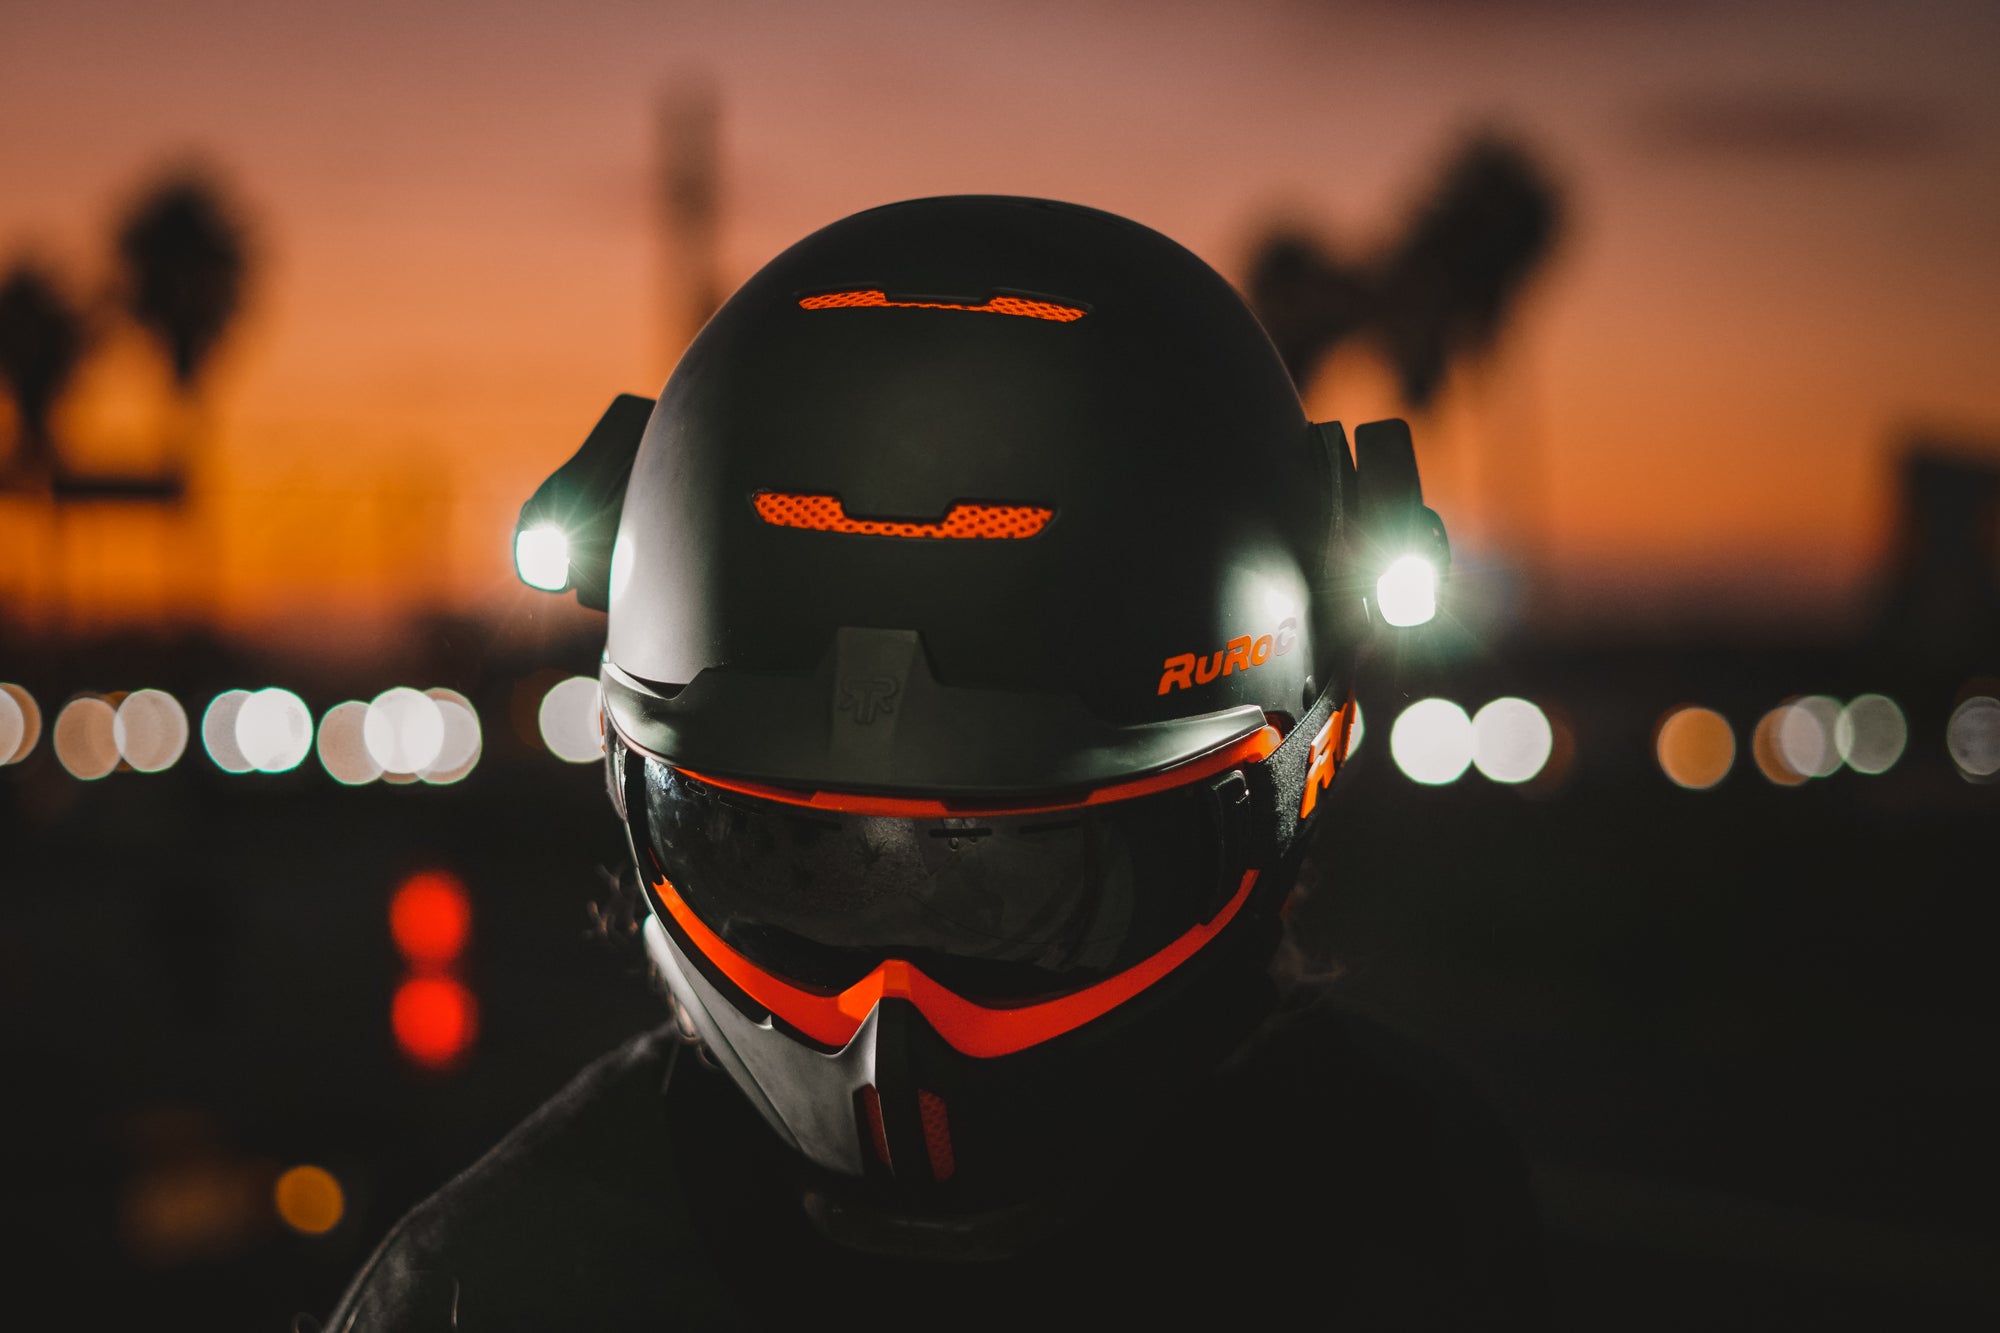 Best Helmet Lights for Ruroc RG1-DX - Easy, Mountable LED Lights